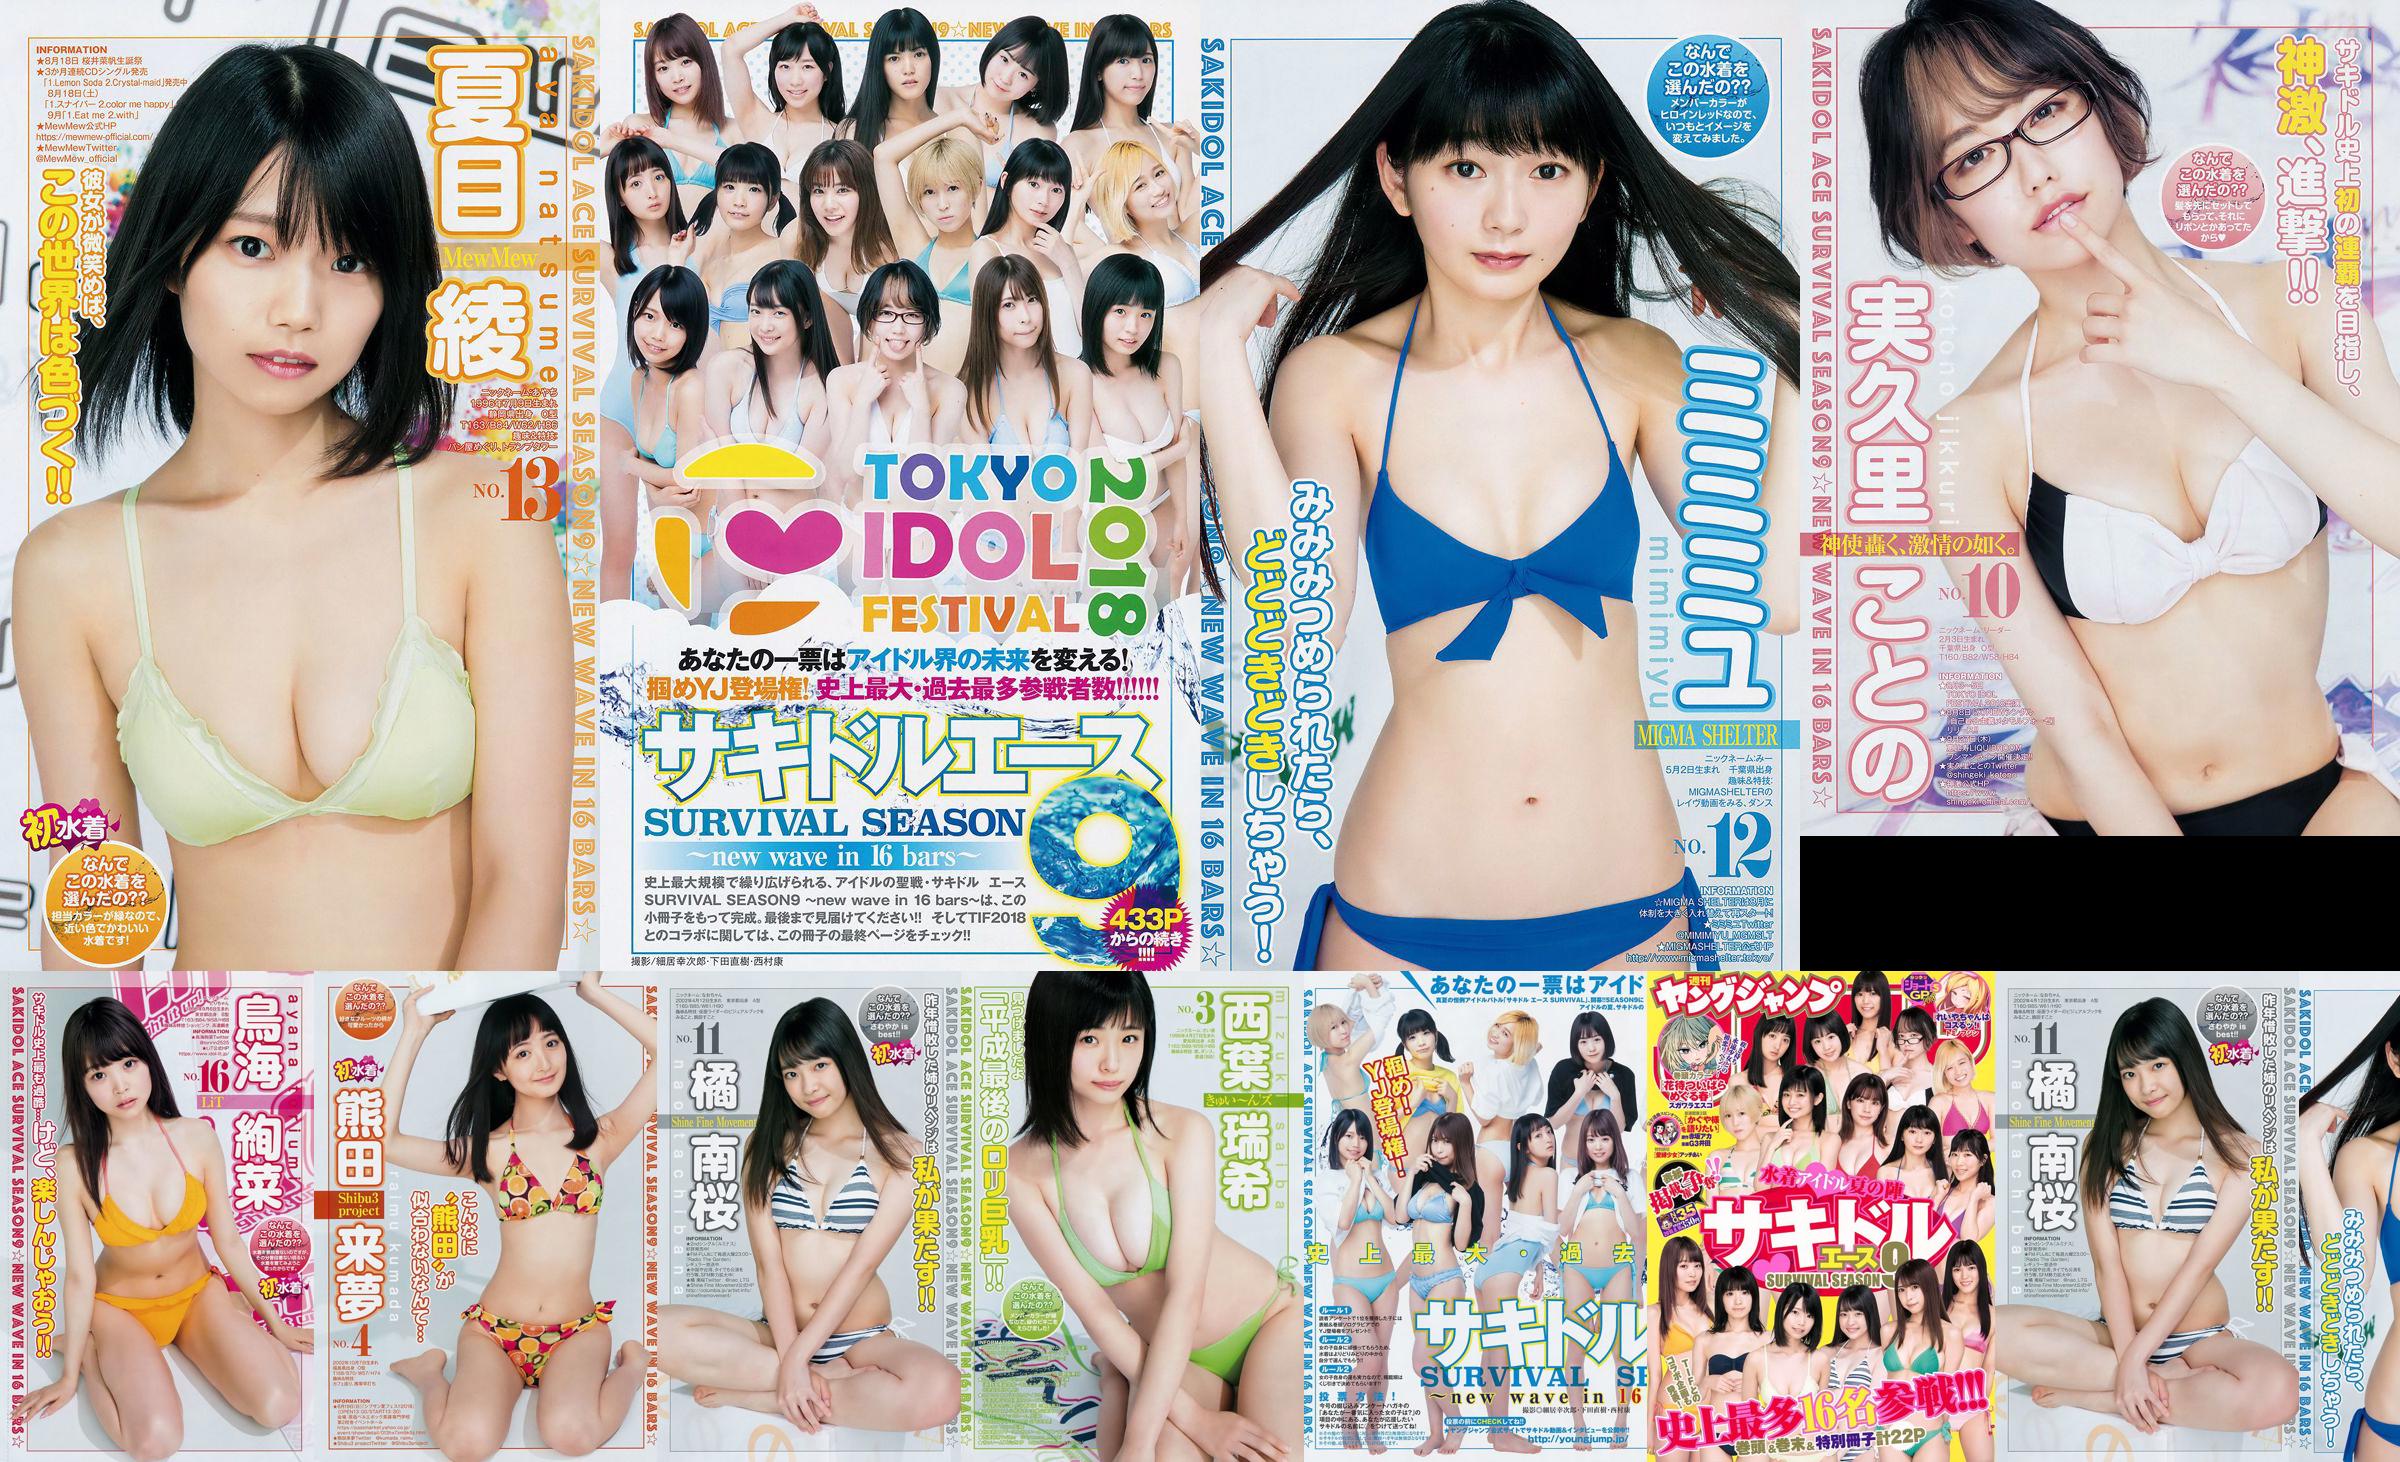 [FLASH] Ikumi Hisamatsu Risa Hirako Ren Ishikawa Angel Moe AKB48 Kaho Shibuya Misuzu Hayashi Ririka 2015.04.21 Photo Toshi No.06670a Page 1